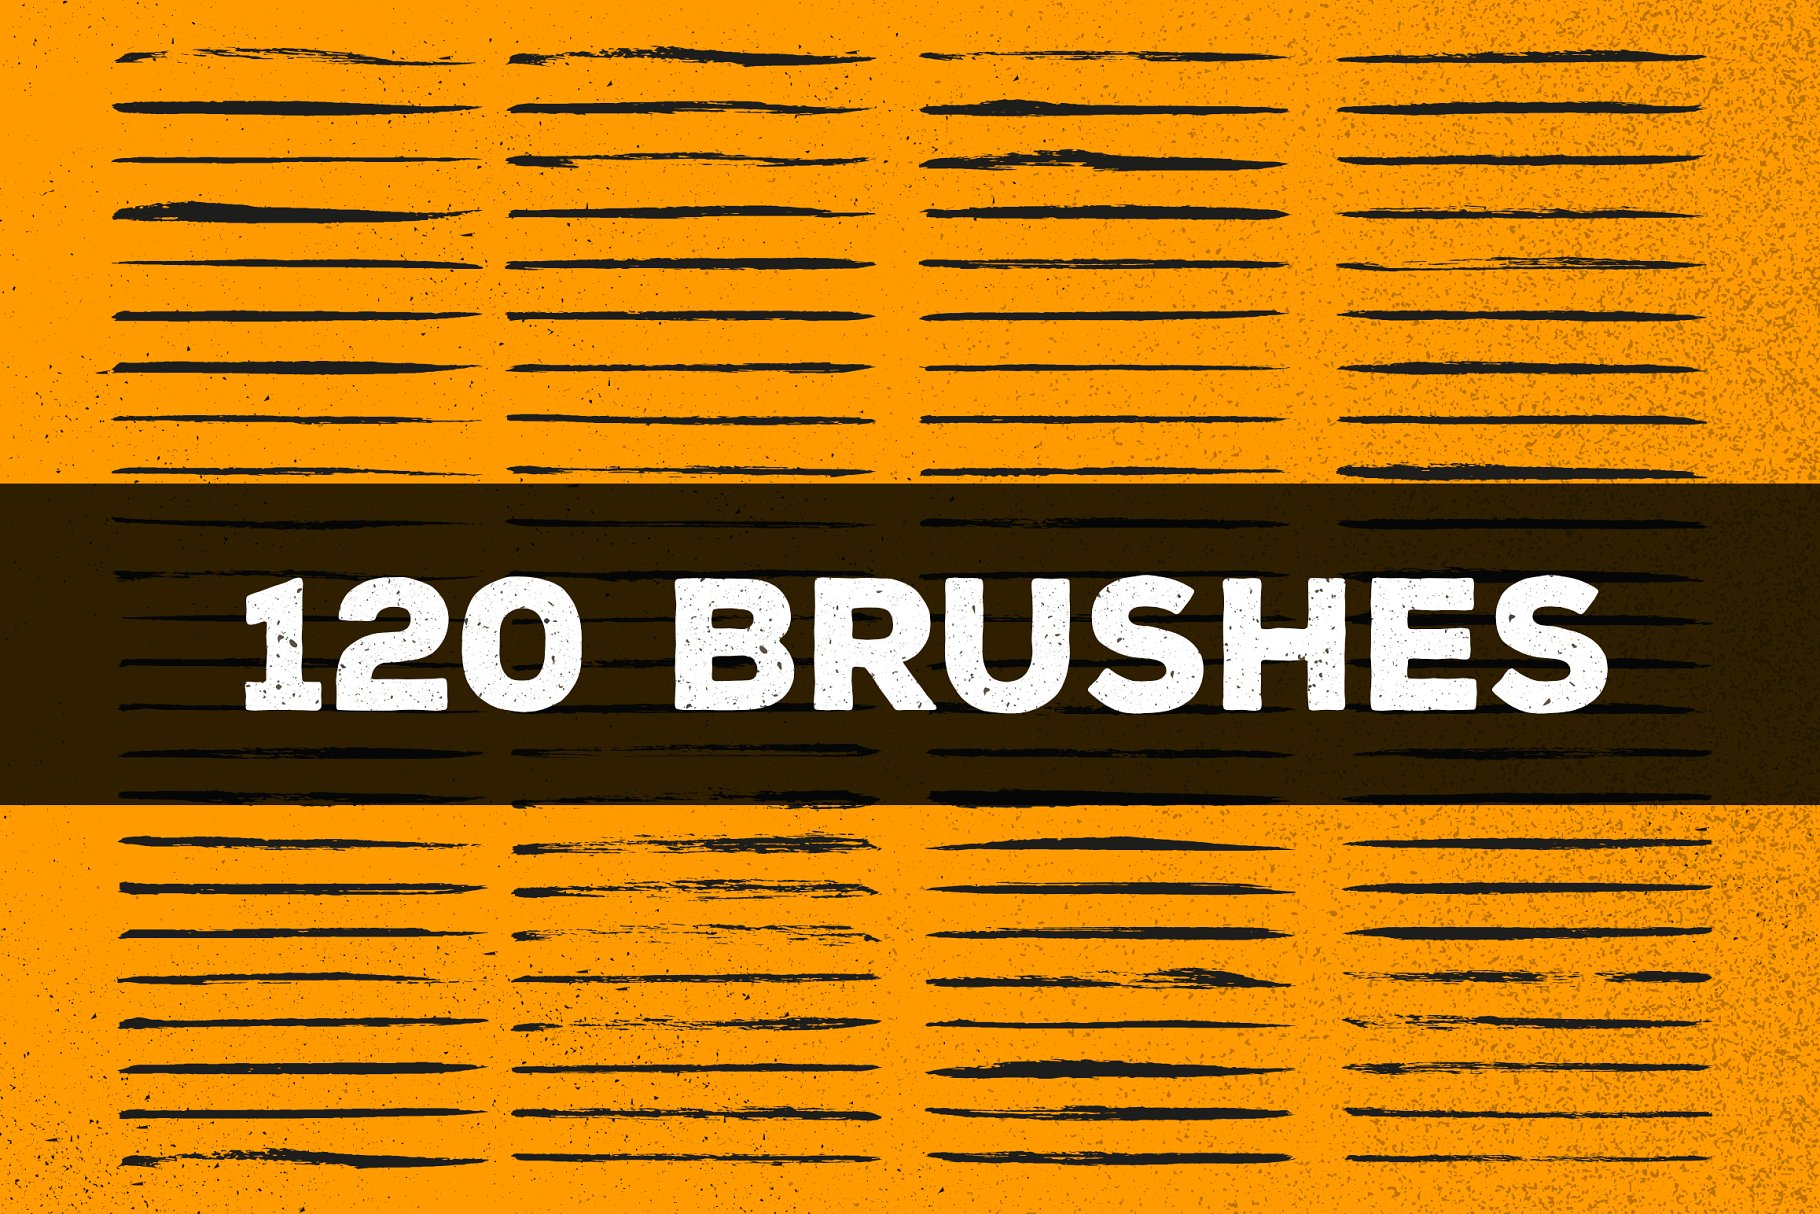 120款手绘画笔AI笔刷大合集 120 Brush Pens for Adobe Illustrator插图2